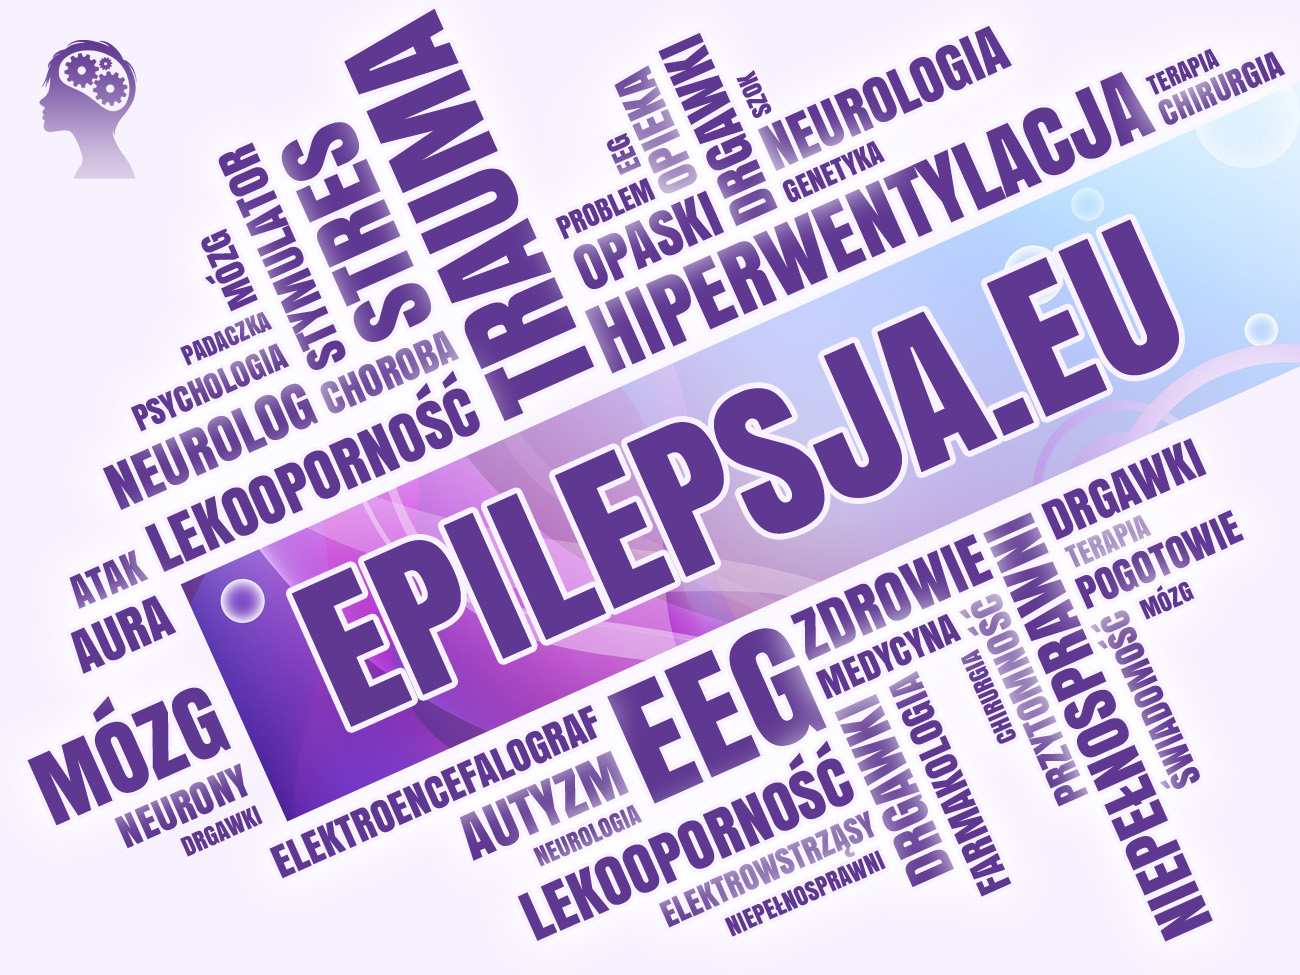 features-epilepsja-eu-1-1300x975px